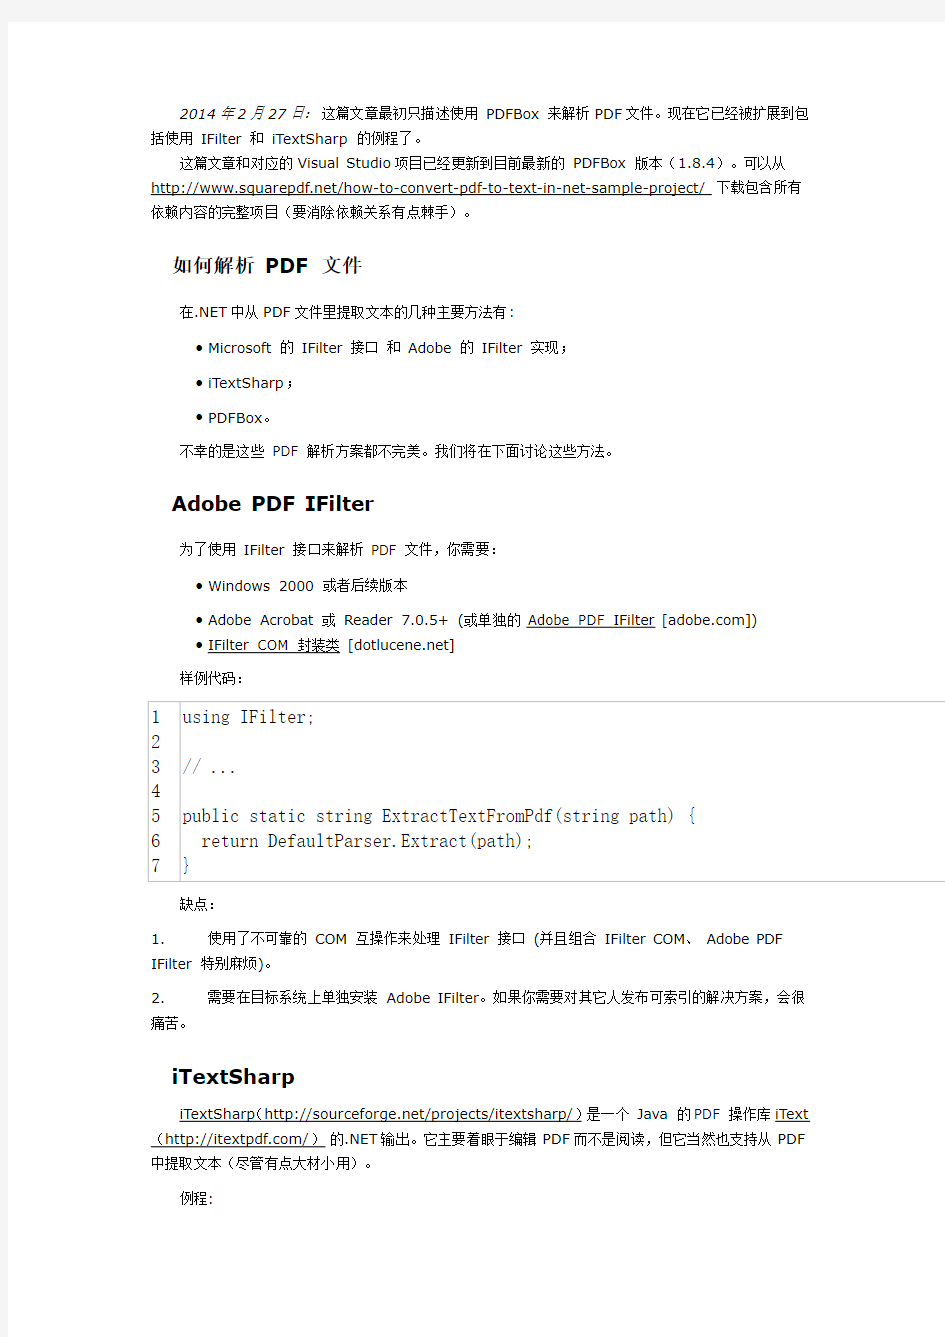 C# 实现将 PDF 转文本的功能